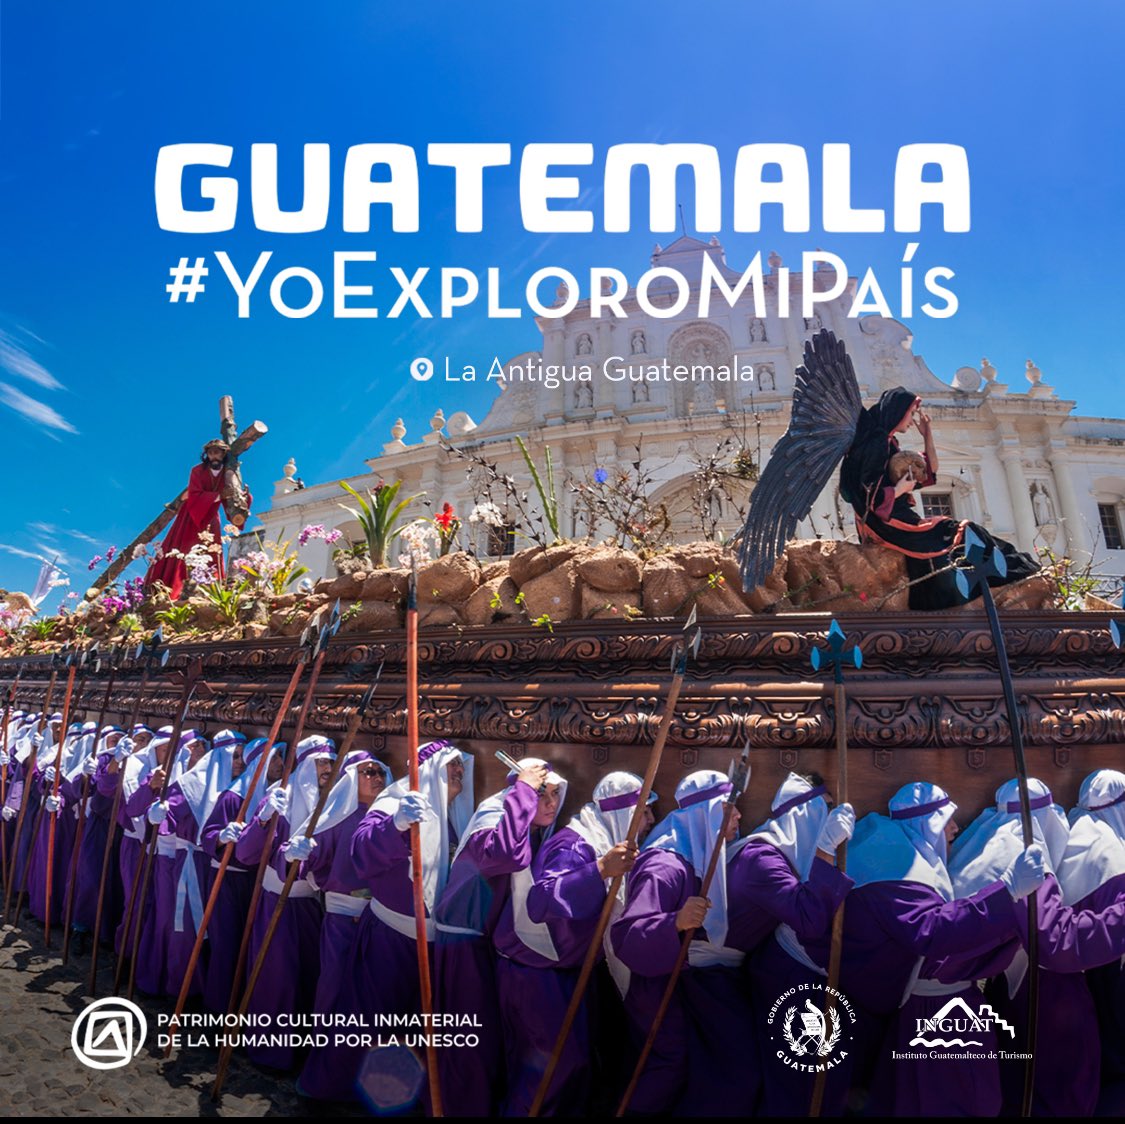 La Semana Santa en Guatemala es una experiencia única llena de devoción y tradición. ¡Ven y descubre nuestras procesiones centenarias! #GuatemalaYoExploroMiPaís #GuatemalaSaleAdelante